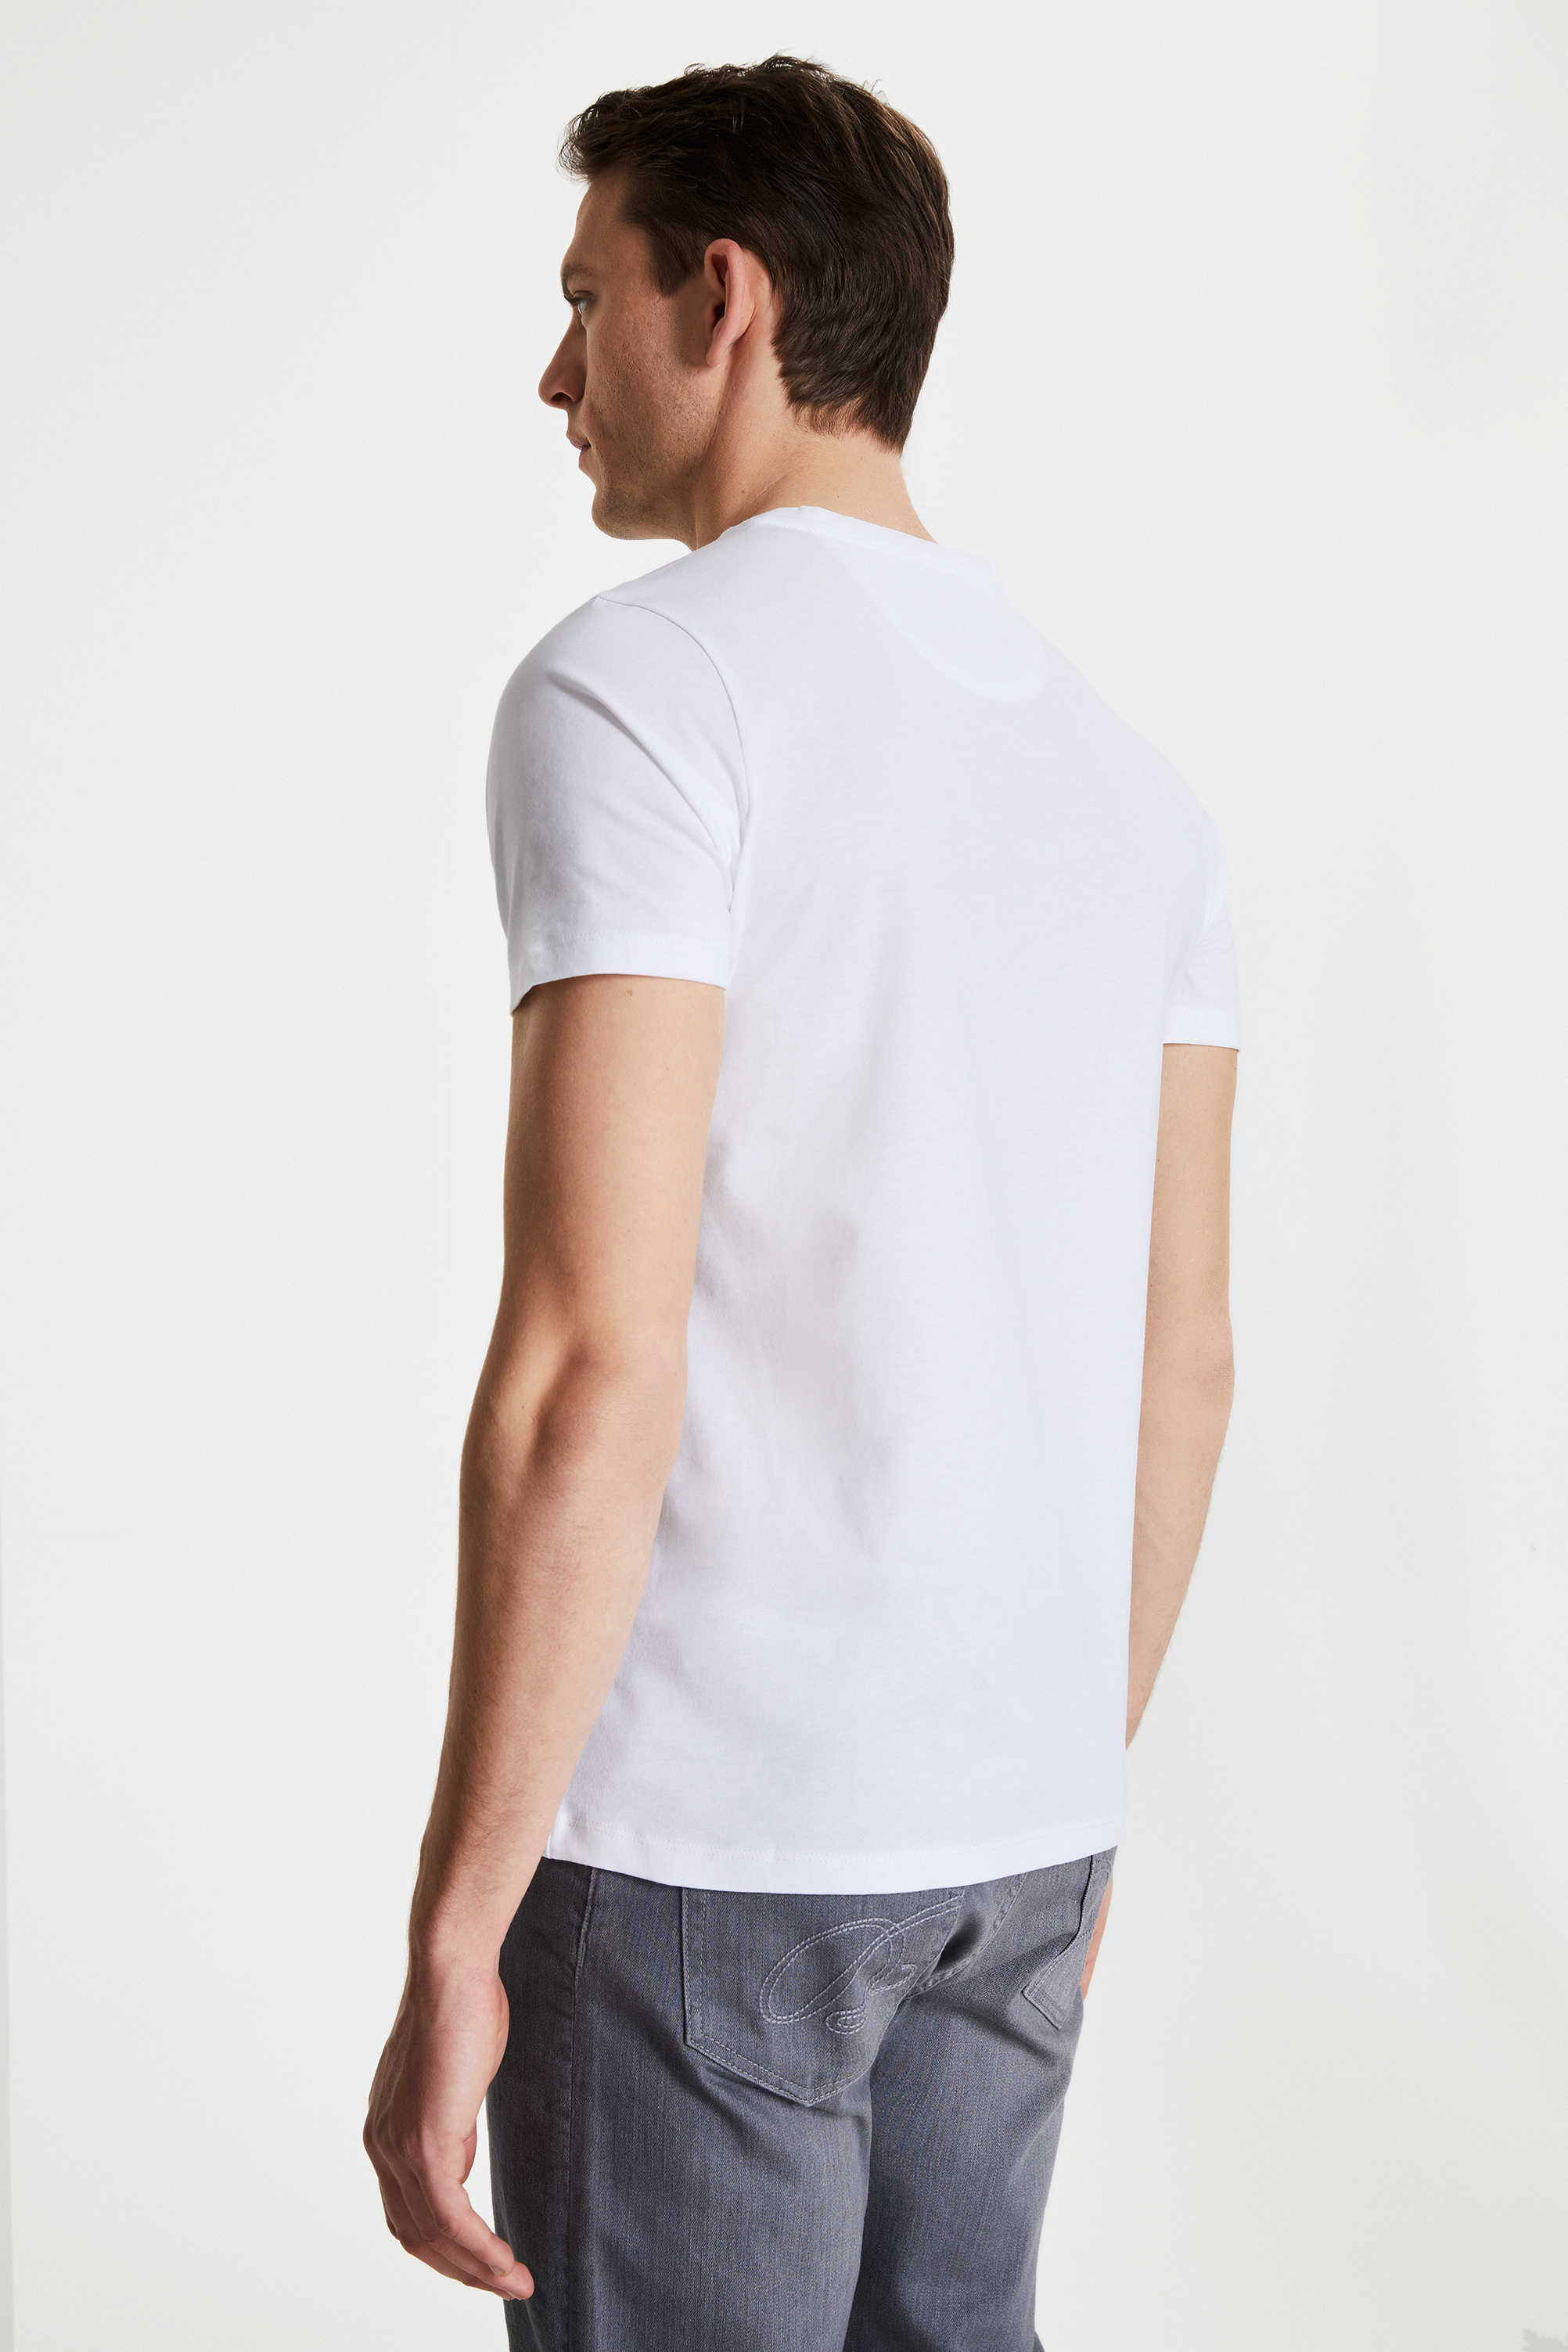 Damat Tween Damat Beyaz Çizgili Baskılı T-shirt. 1